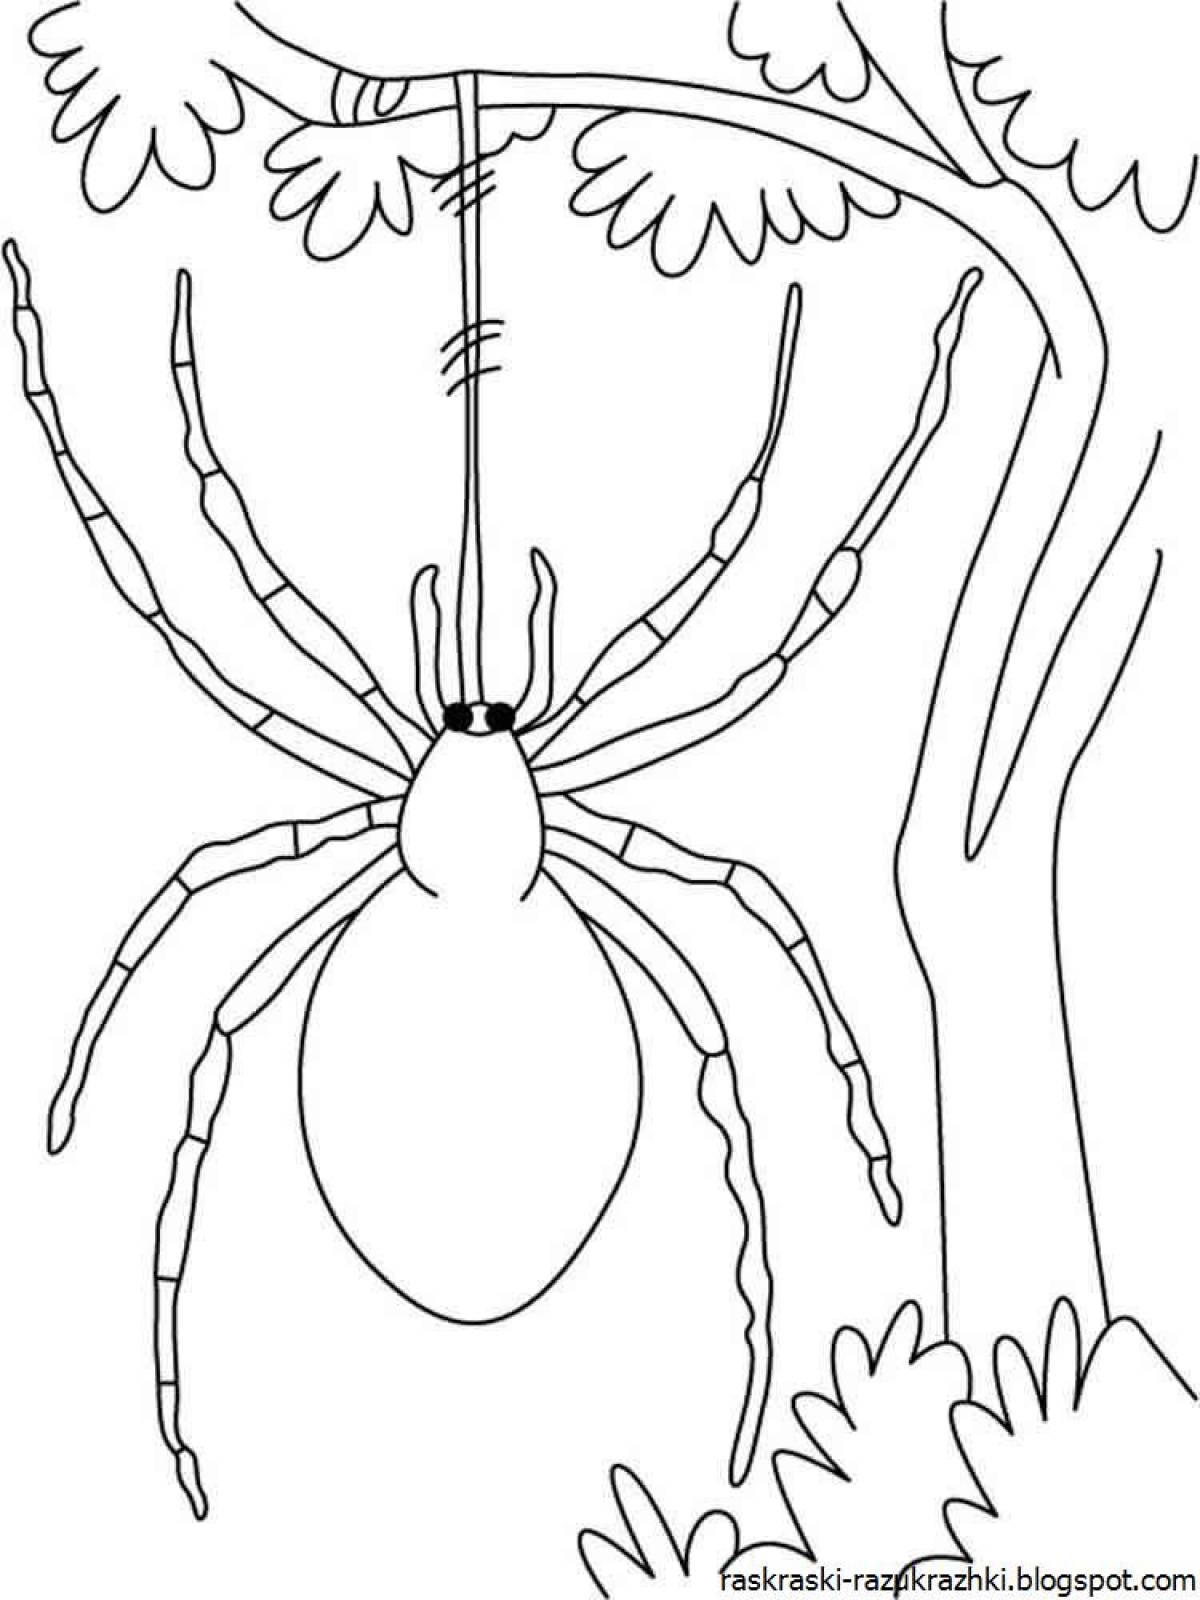 Spider #4